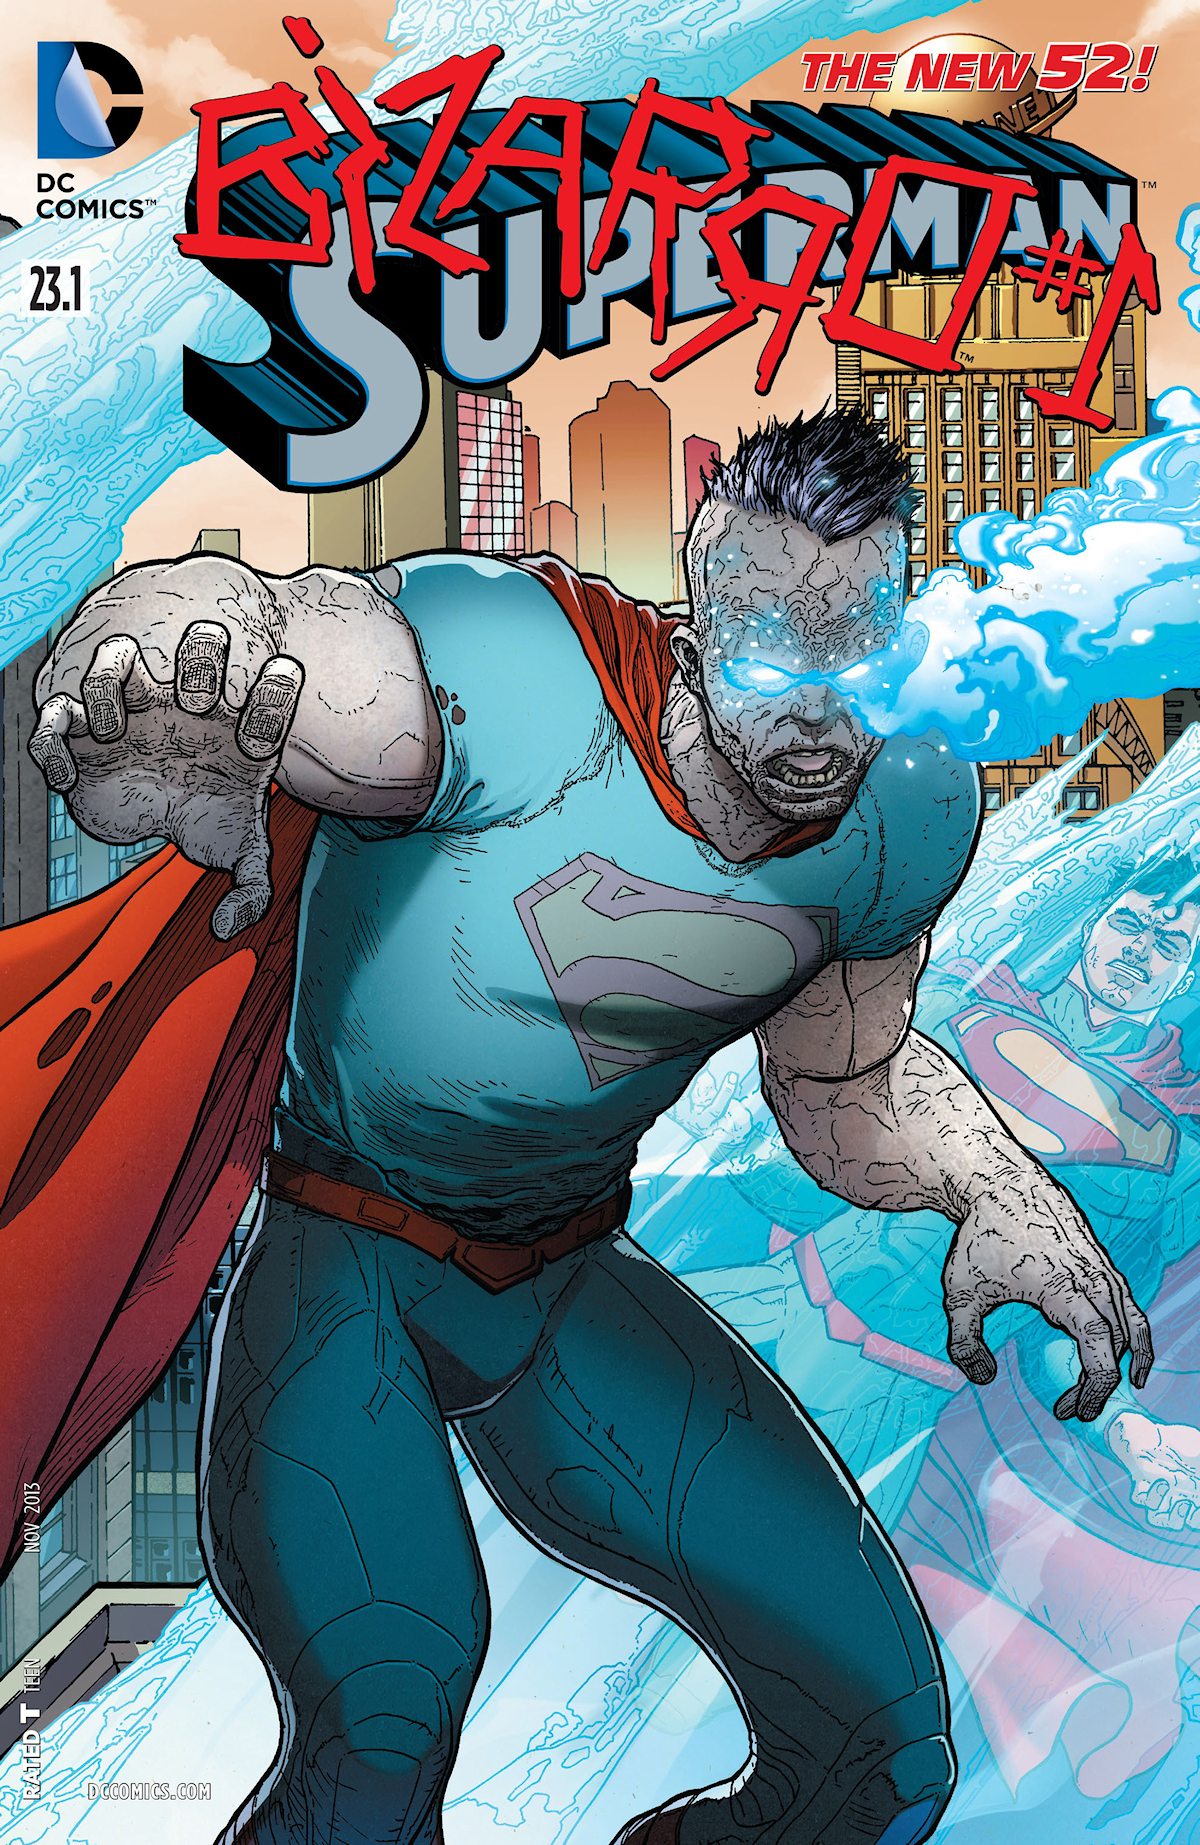 Superman Vol. 3 23.1 (Cover A)